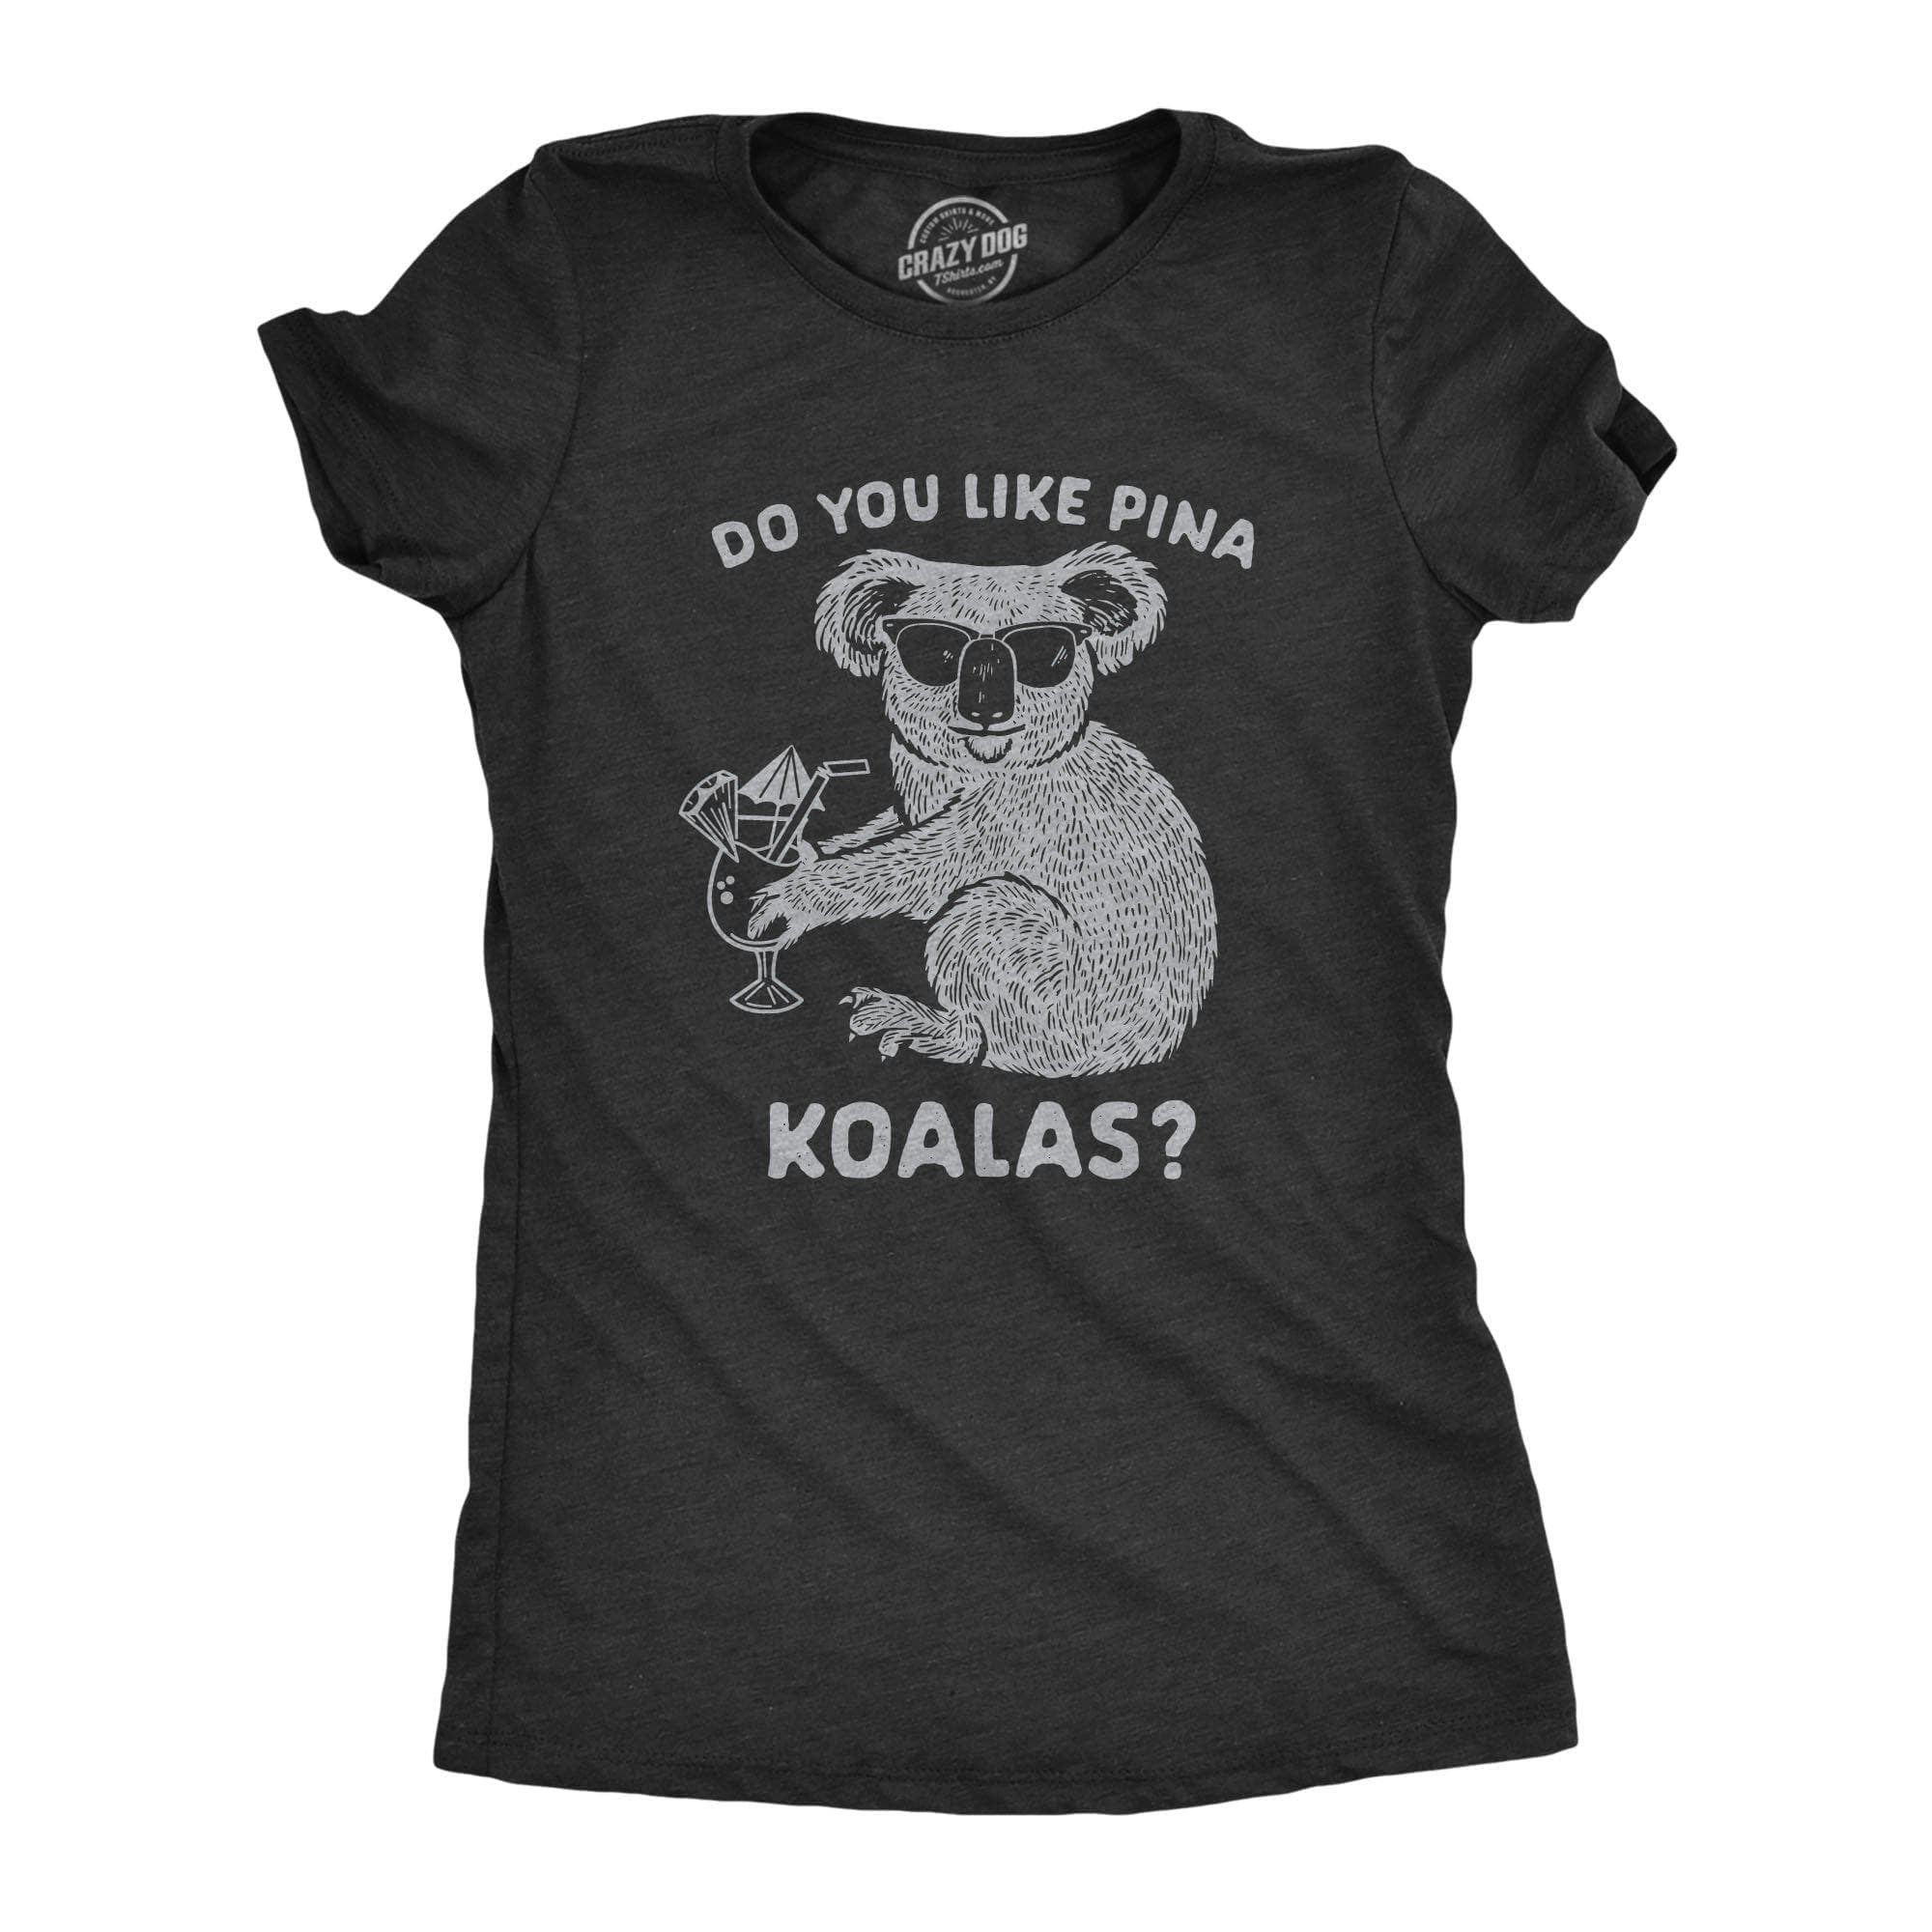 Do You Like Pina Koalas Women's Tshirt - Crazy Dog T-Shirts